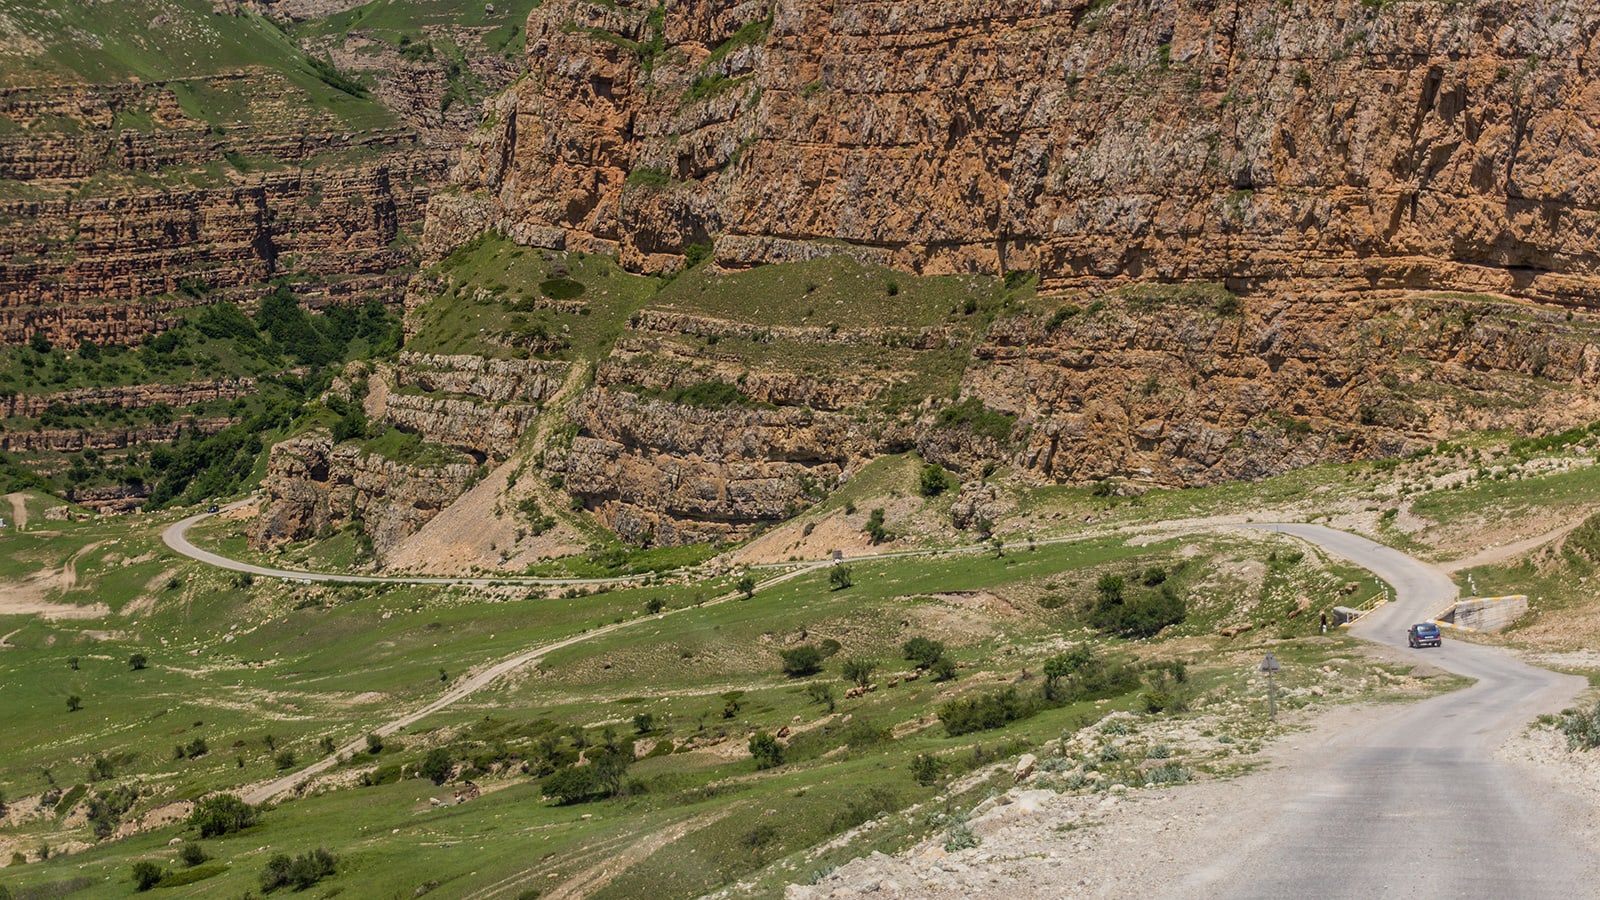     Todavía no ha sido invadido por turistas. Aquí están las obras maestras del senderismo en Azerbaiyán.